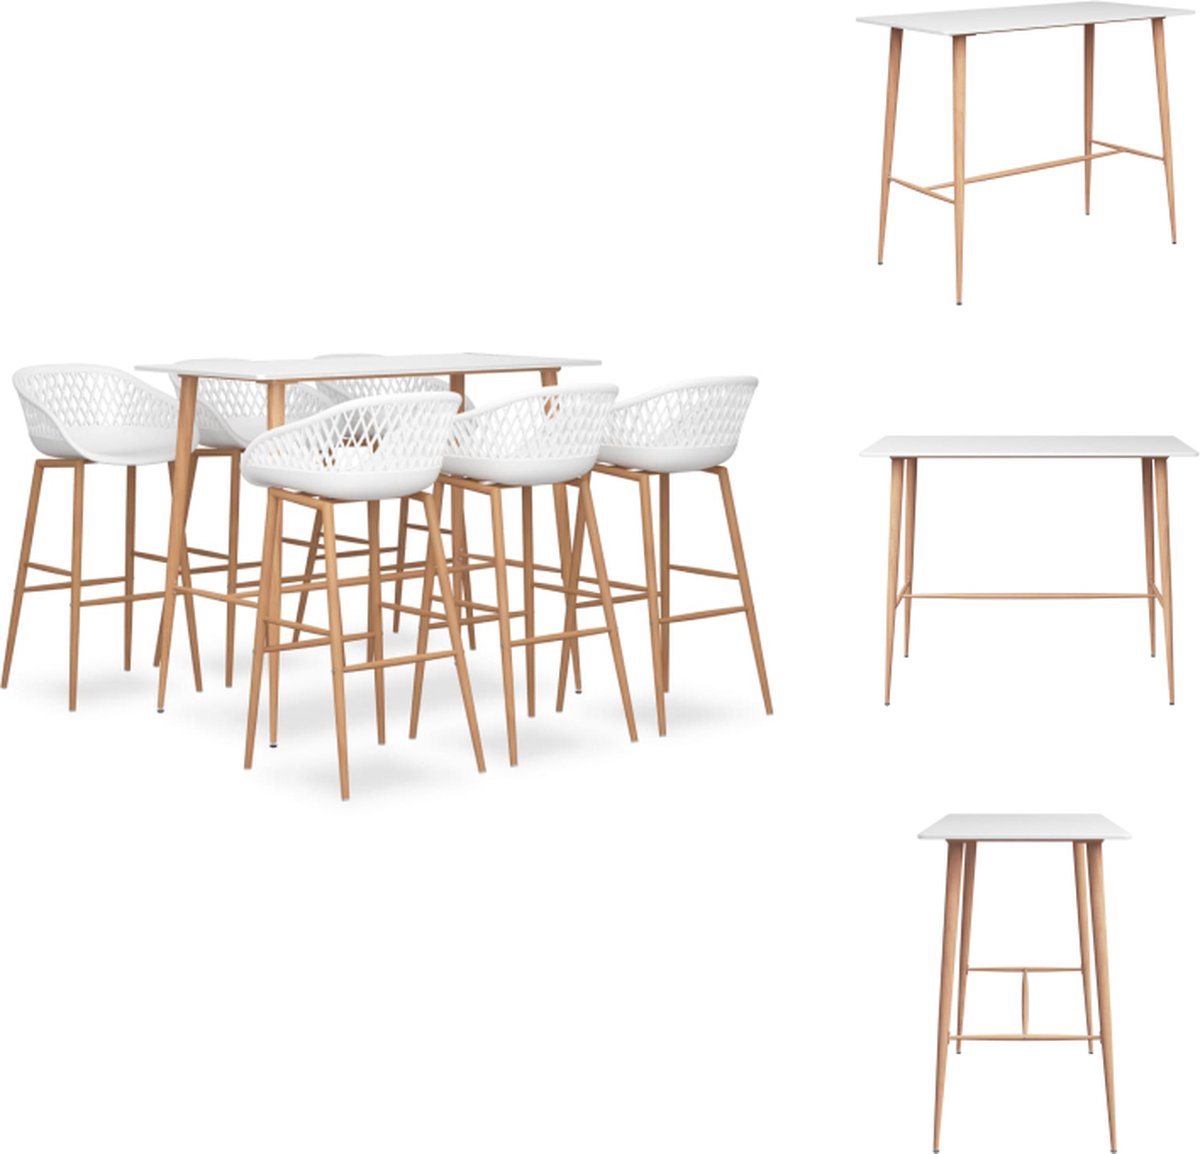 VidaXL Barset Bartafel en 6 Barkrukken Wit 120 x 60 x 105 cm MDF en Metaal Set tafel en stoelen